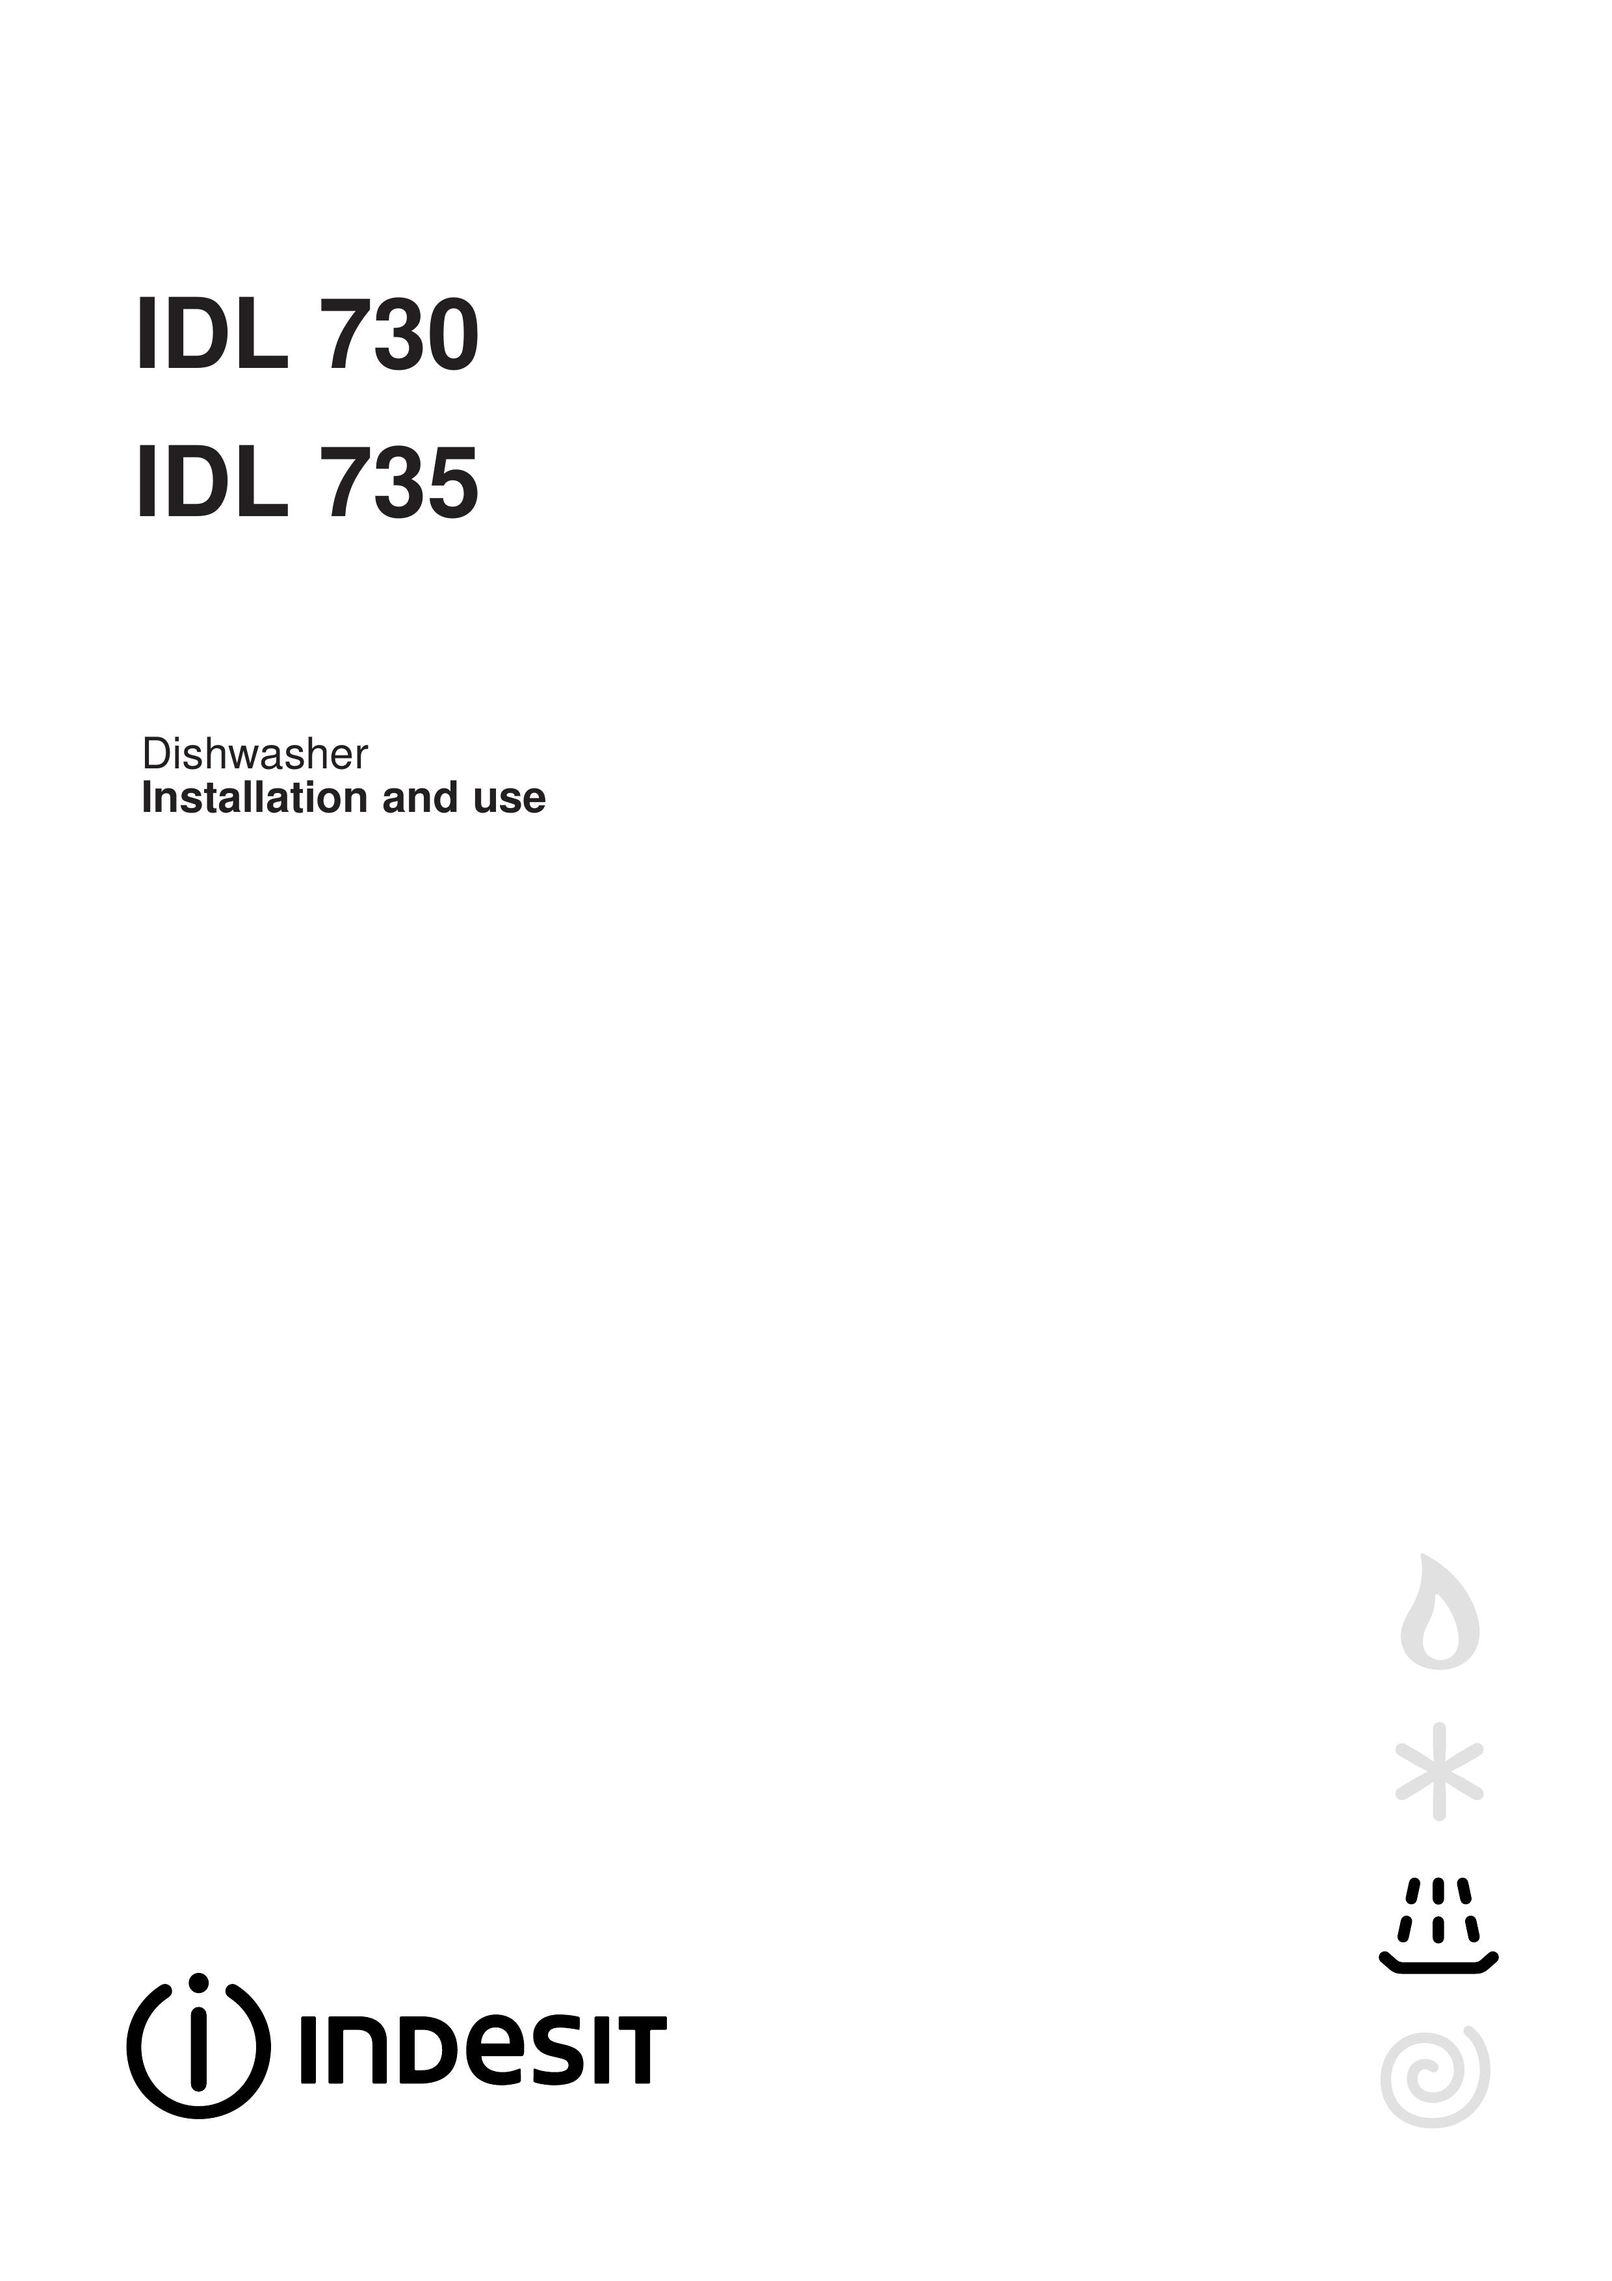 Indesit IDL 735 Dishwasher User Manual